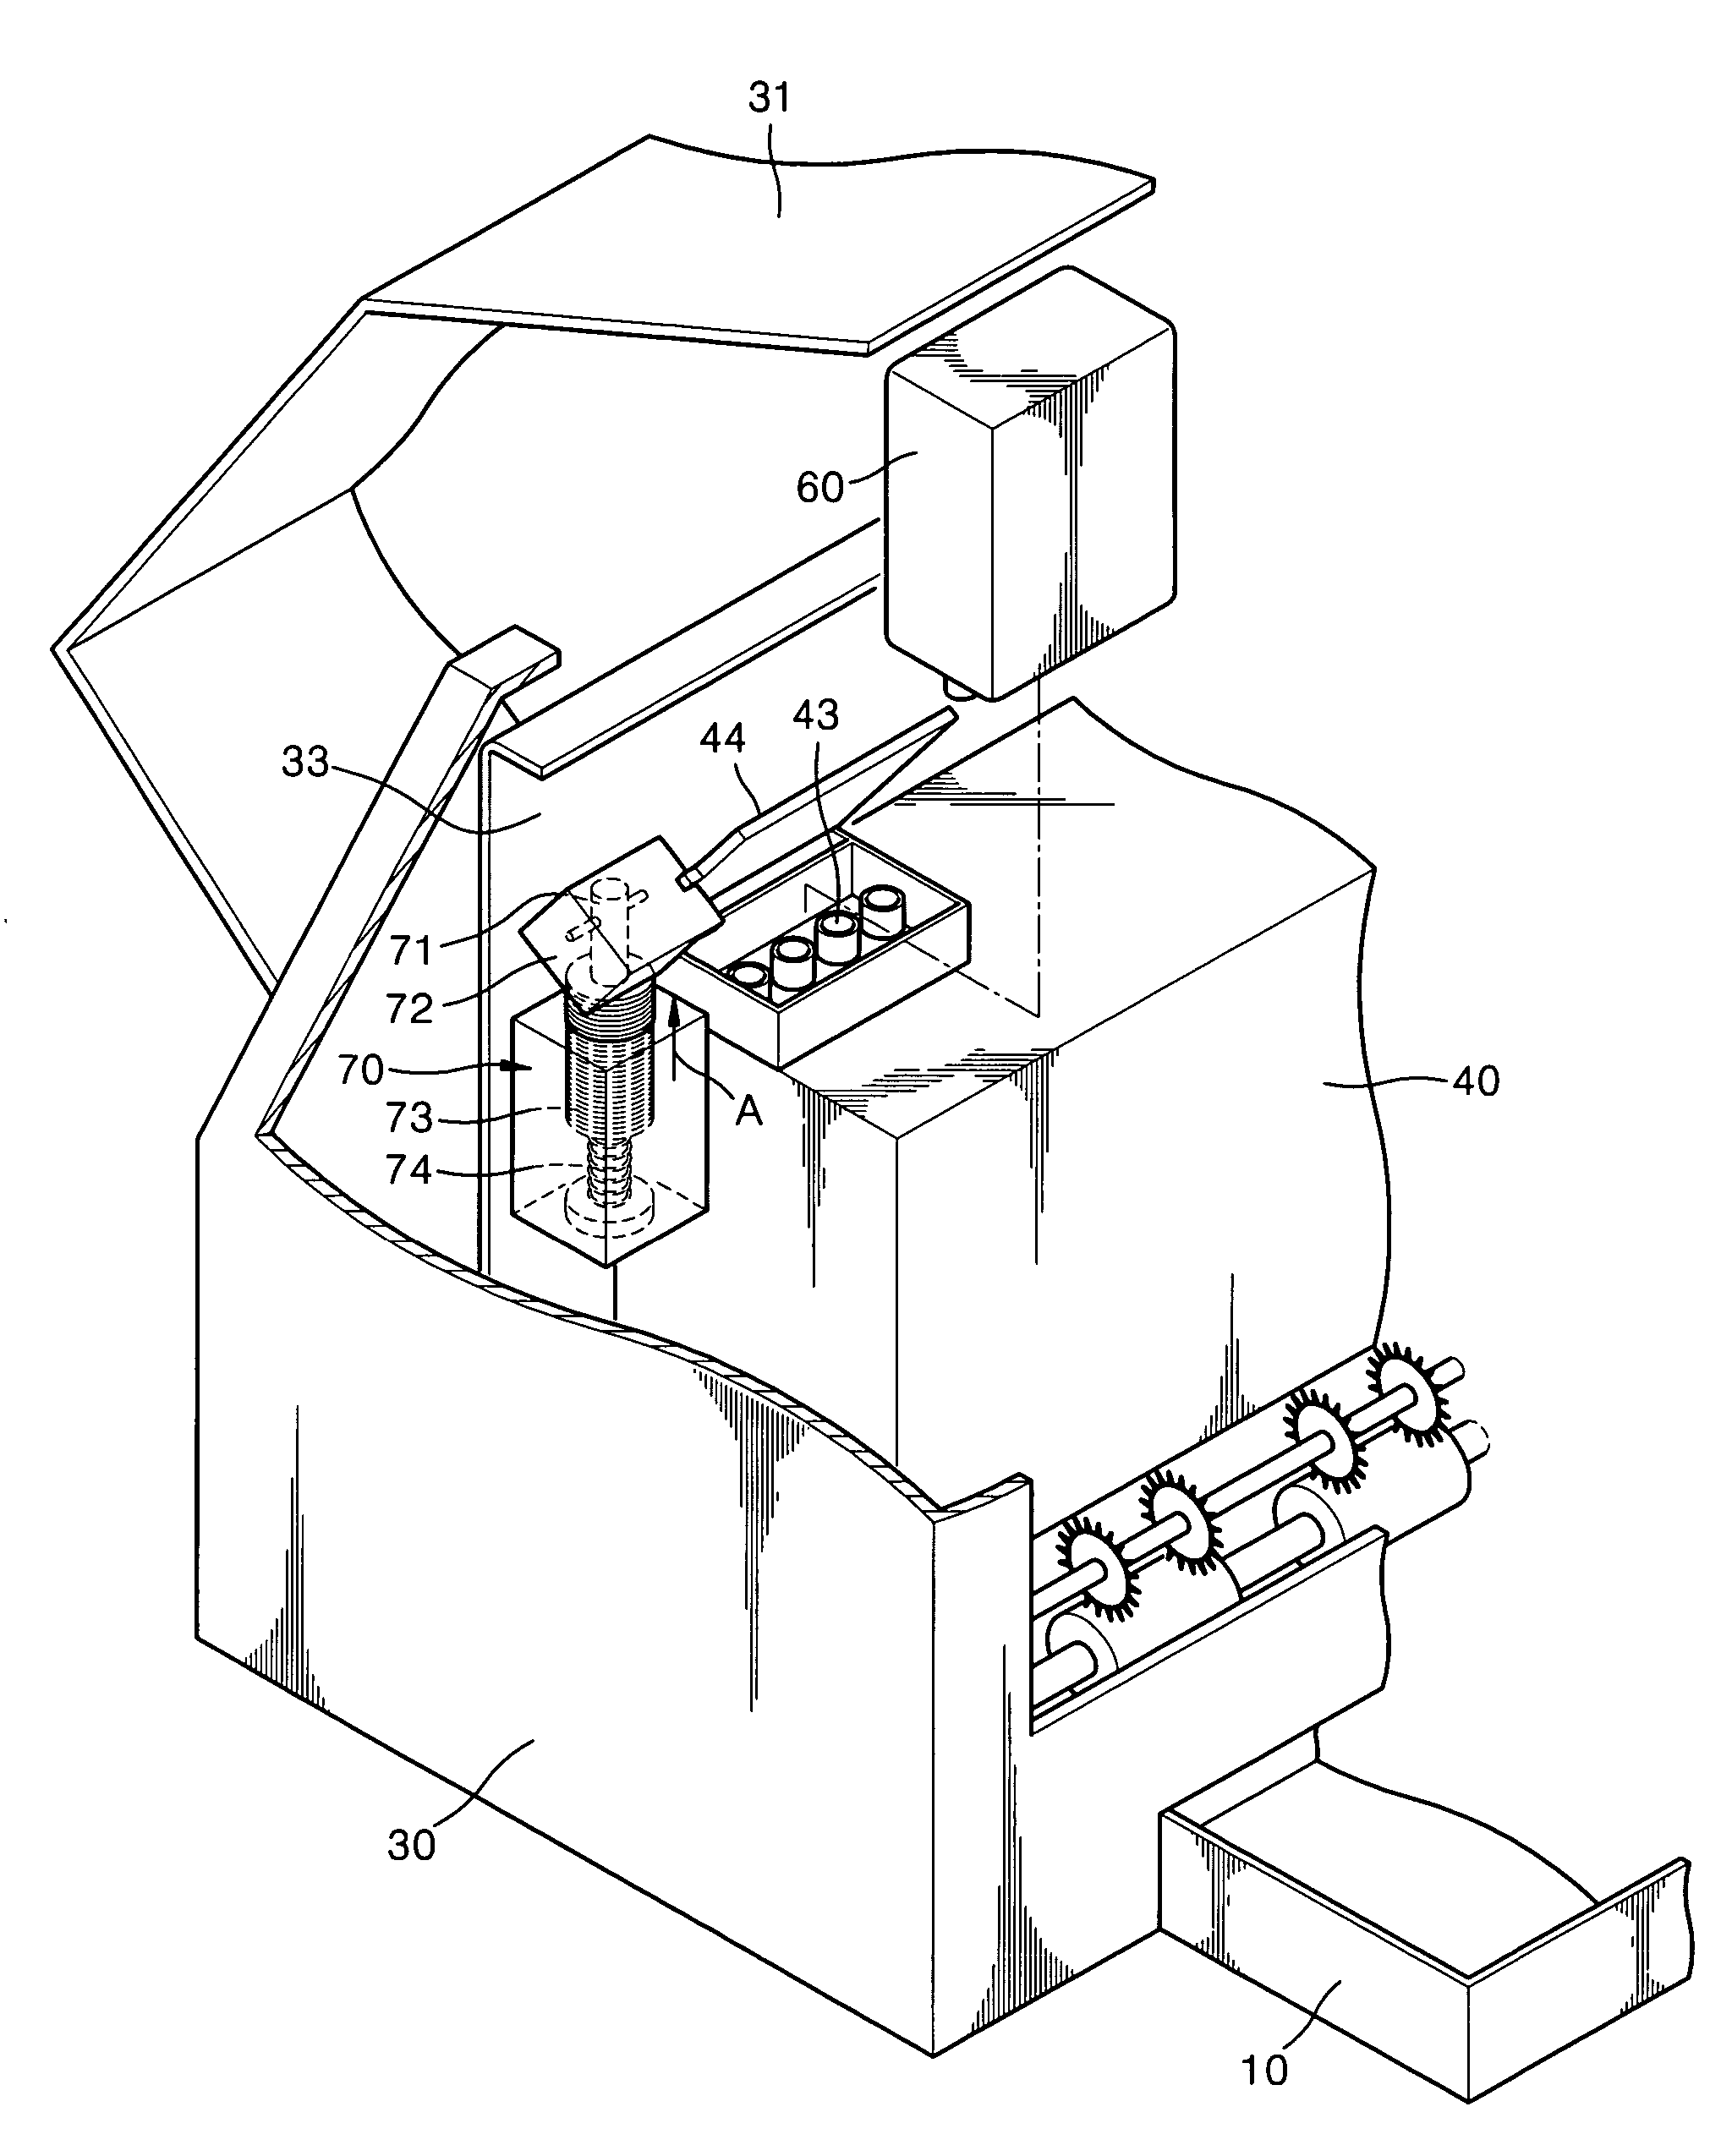 Inkjet image forming apparatus